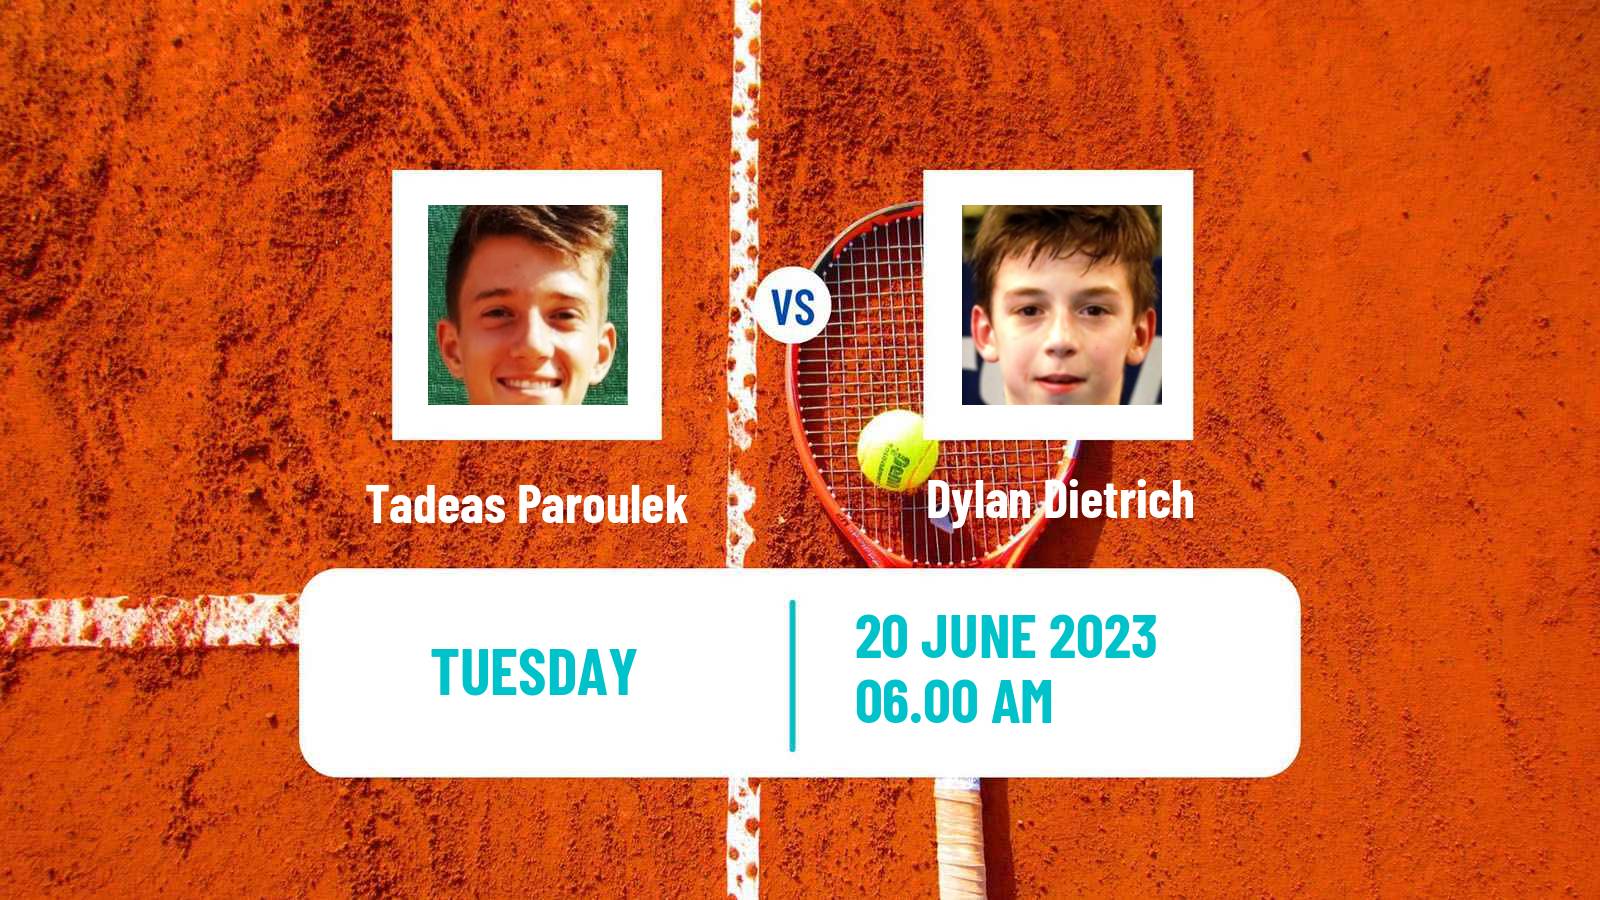 Tennis ITF M15 Saarlouis Men Tadeas Paroulek - Dylan Dietrich